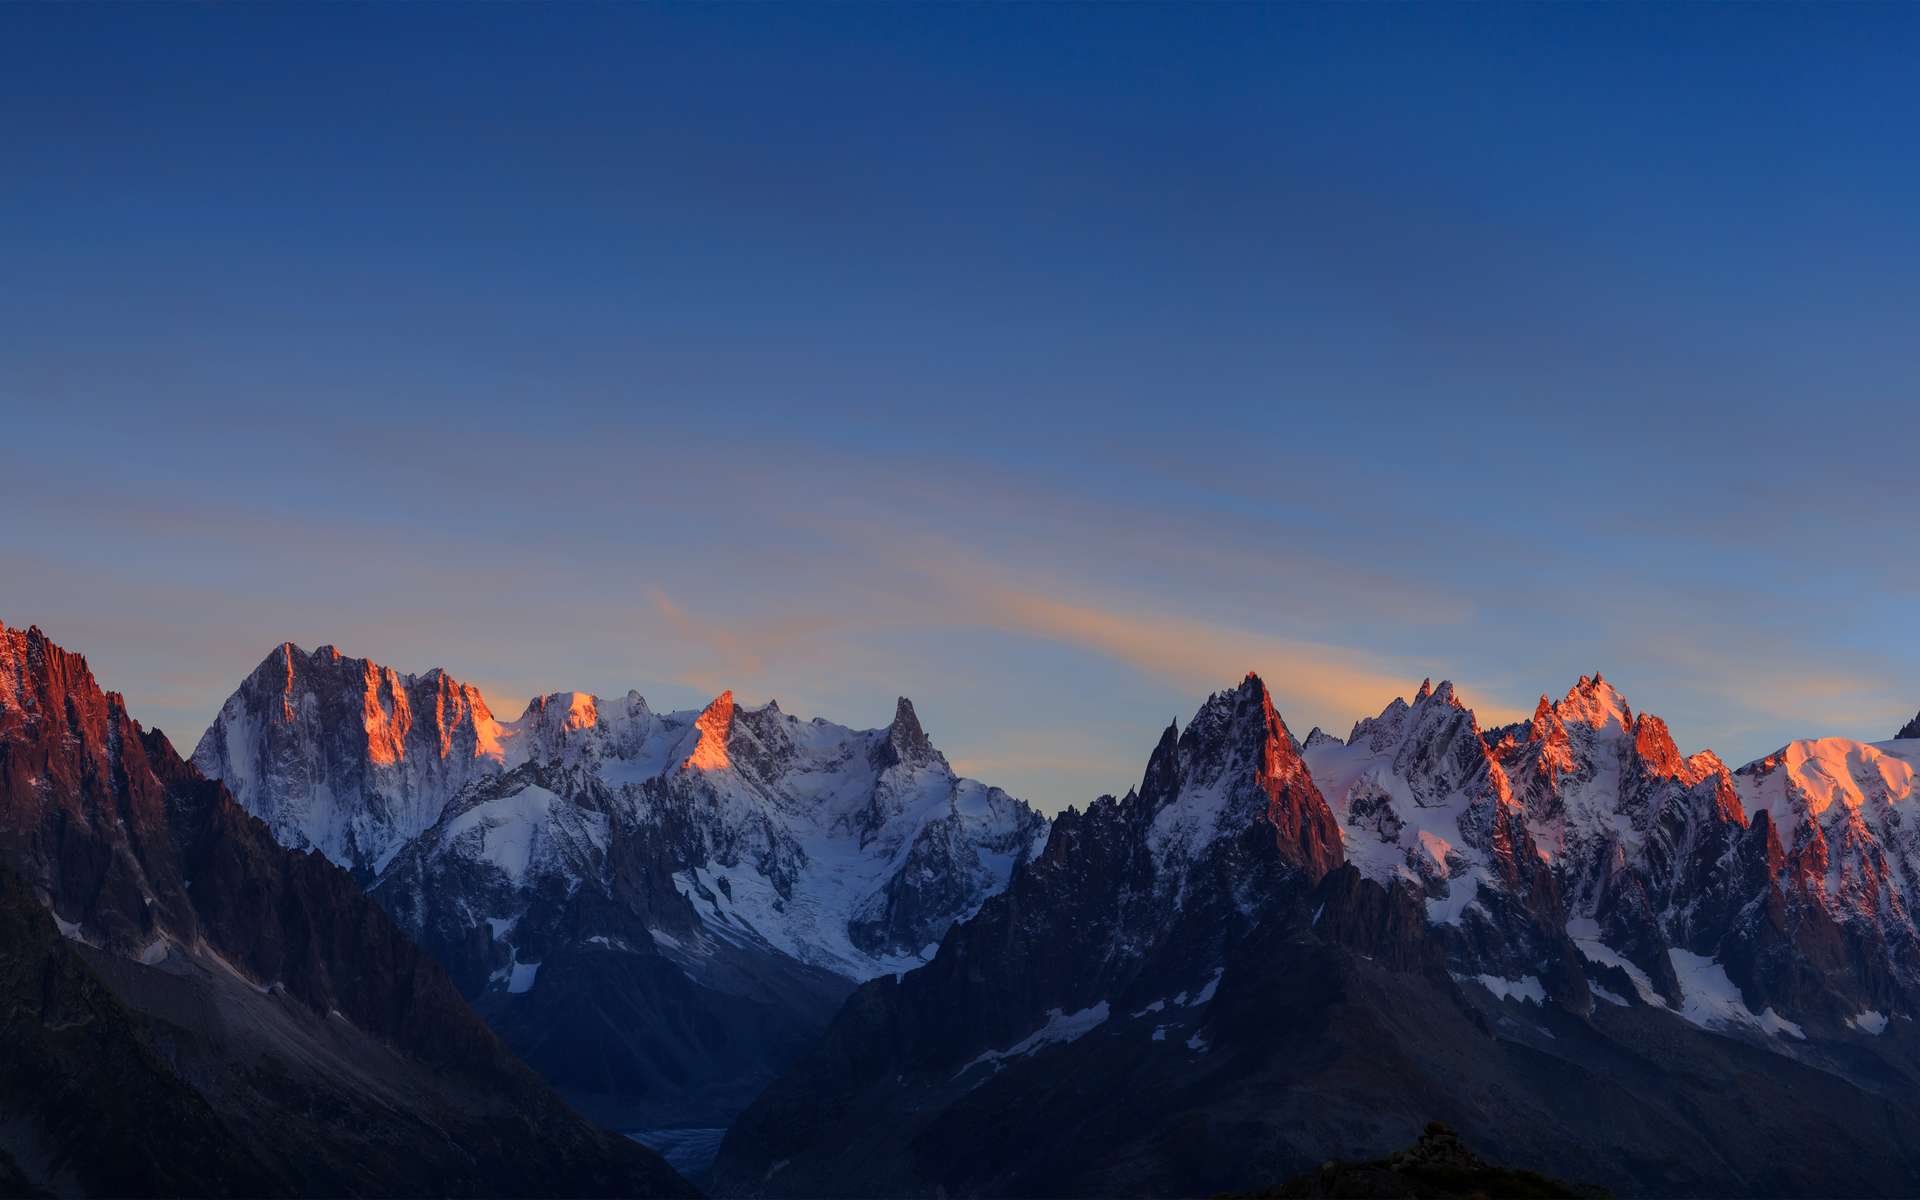 Une chaîne de montagnes peut s'étendre sur des milliers de kilomètres. © Sanderstock, Adobe Stock